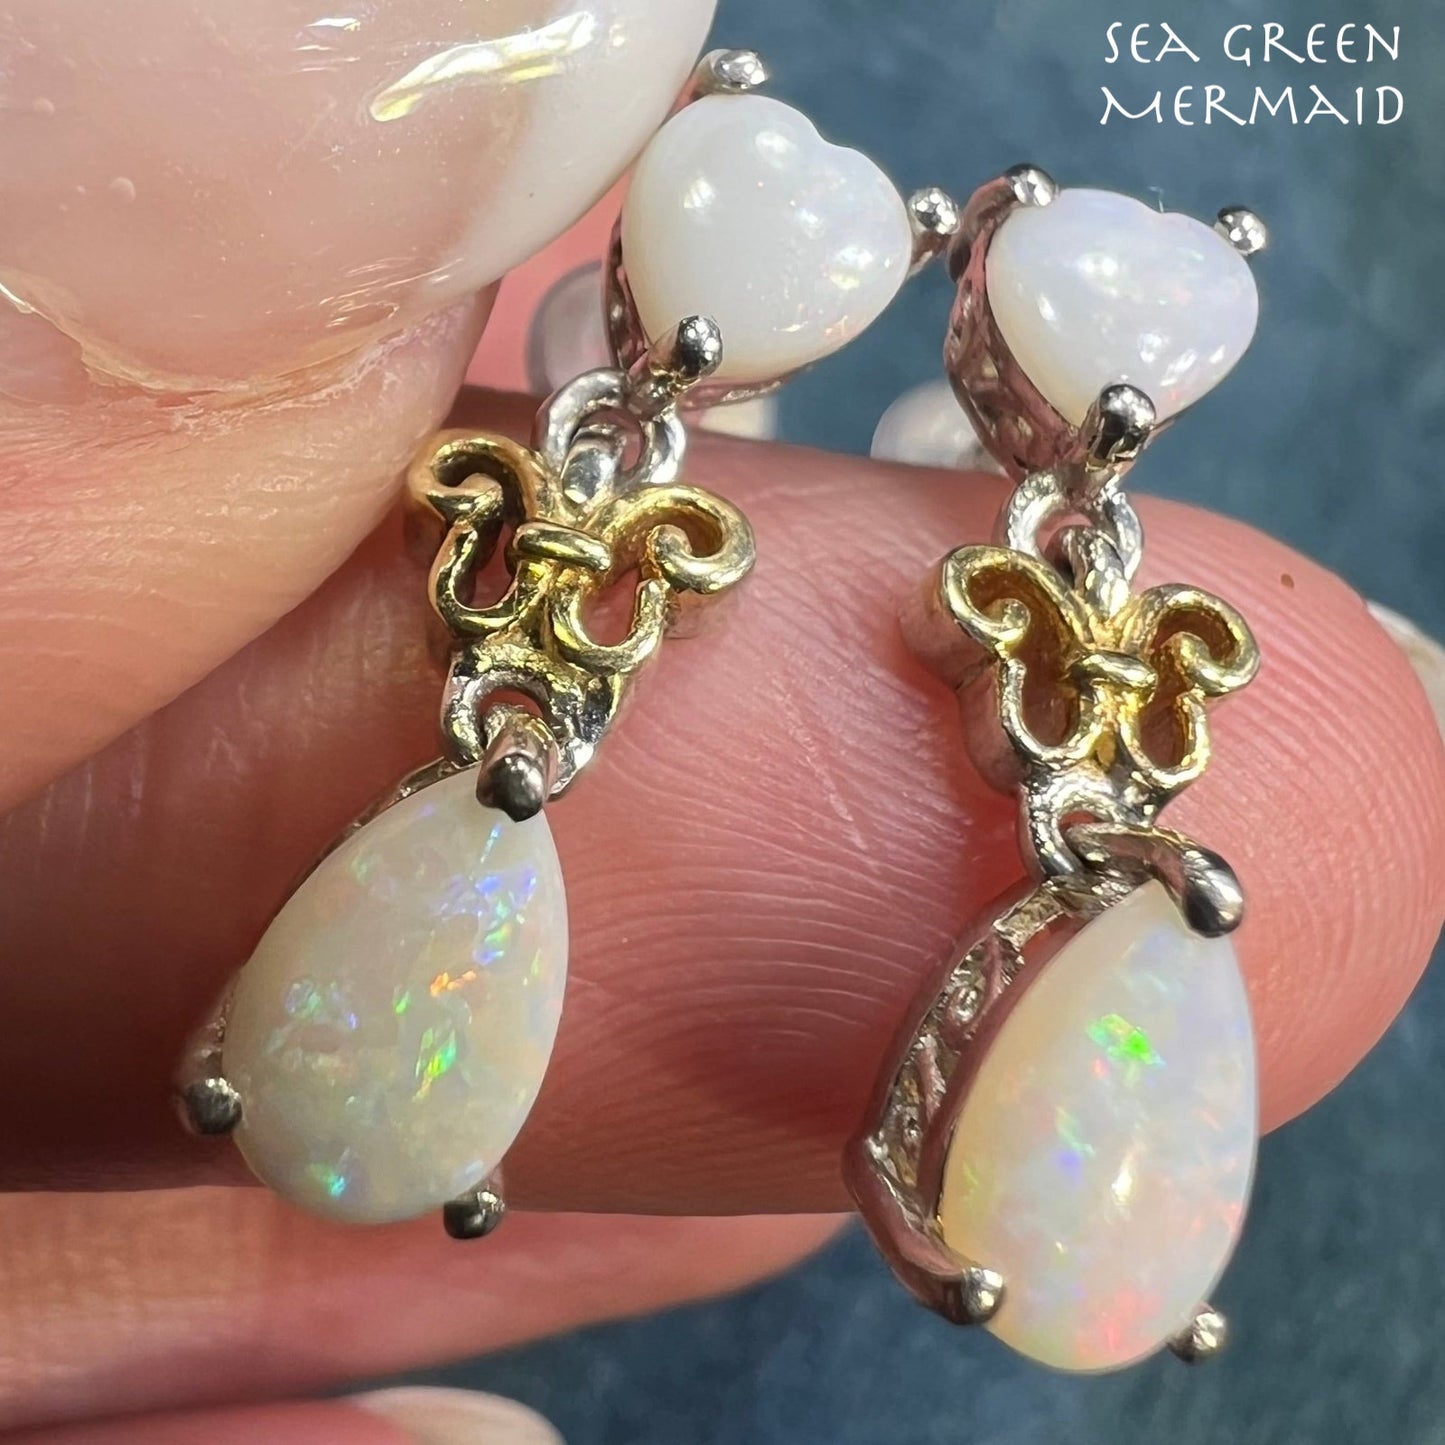 Australian Opal Heart + Teardrop Dangle Earrings in Sterling Silver